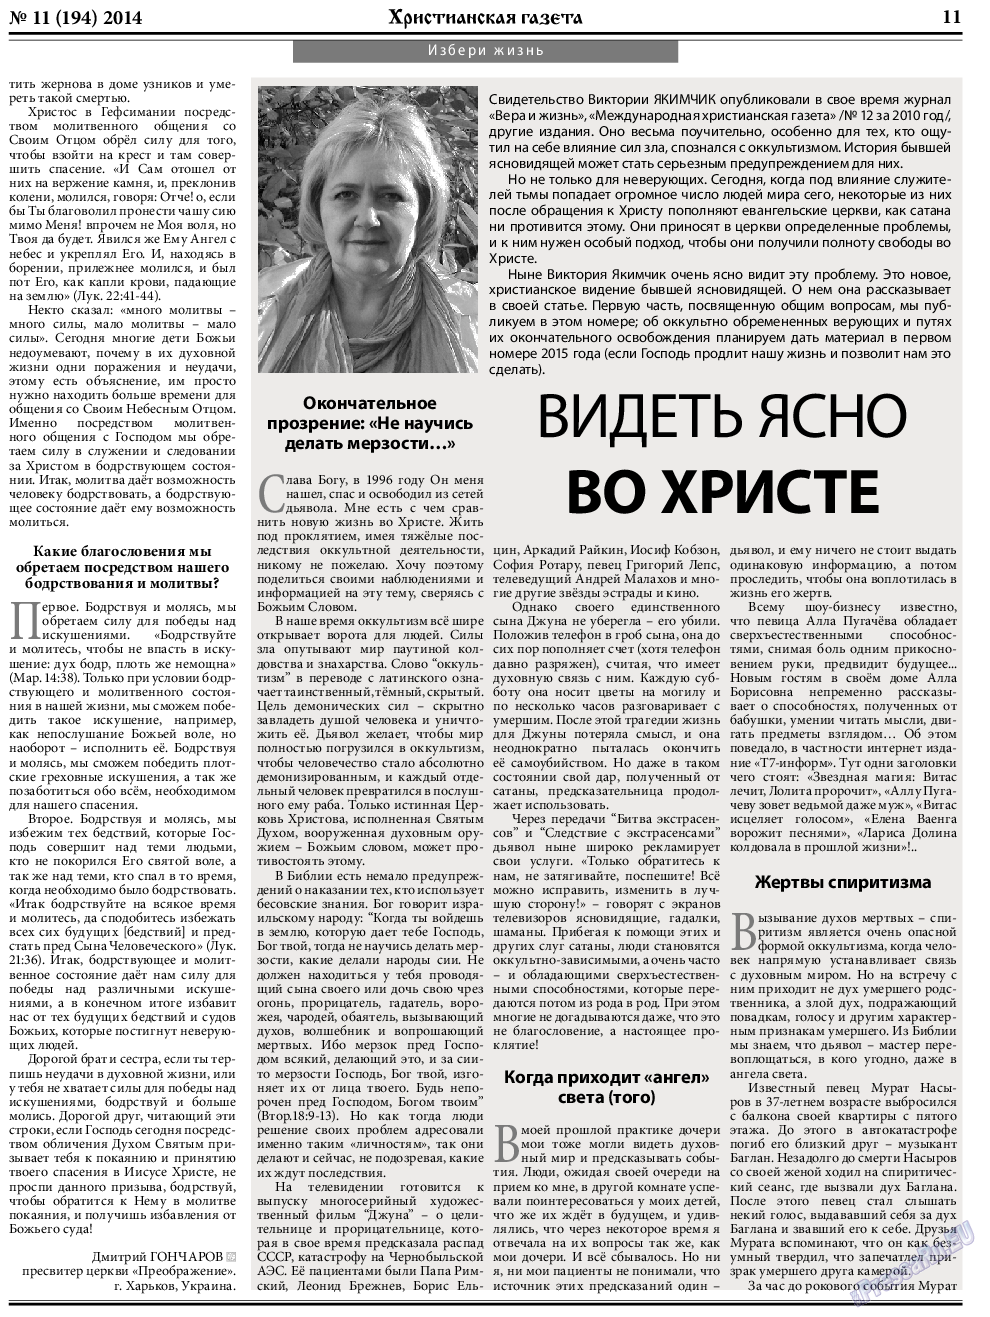 Христианская газета, газета. 2014 №11 стр.11